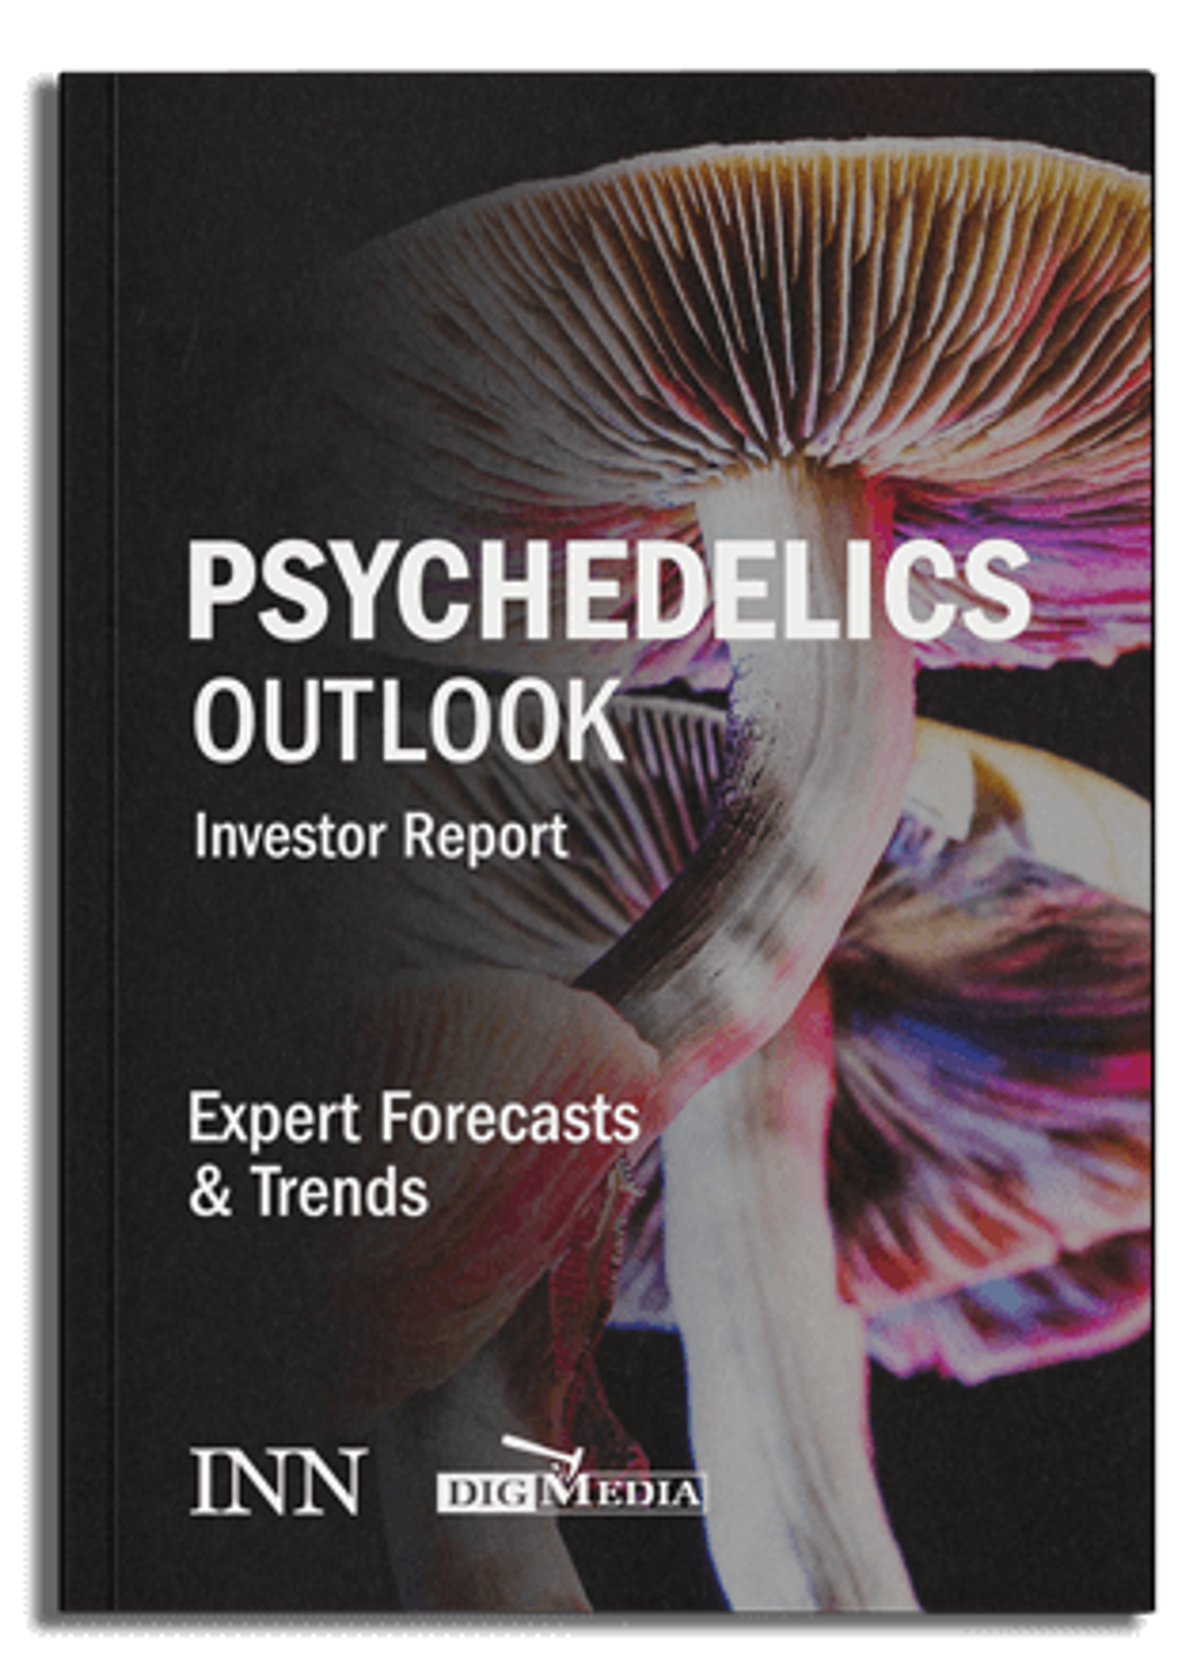 Pyschedelics Market Outlook Report